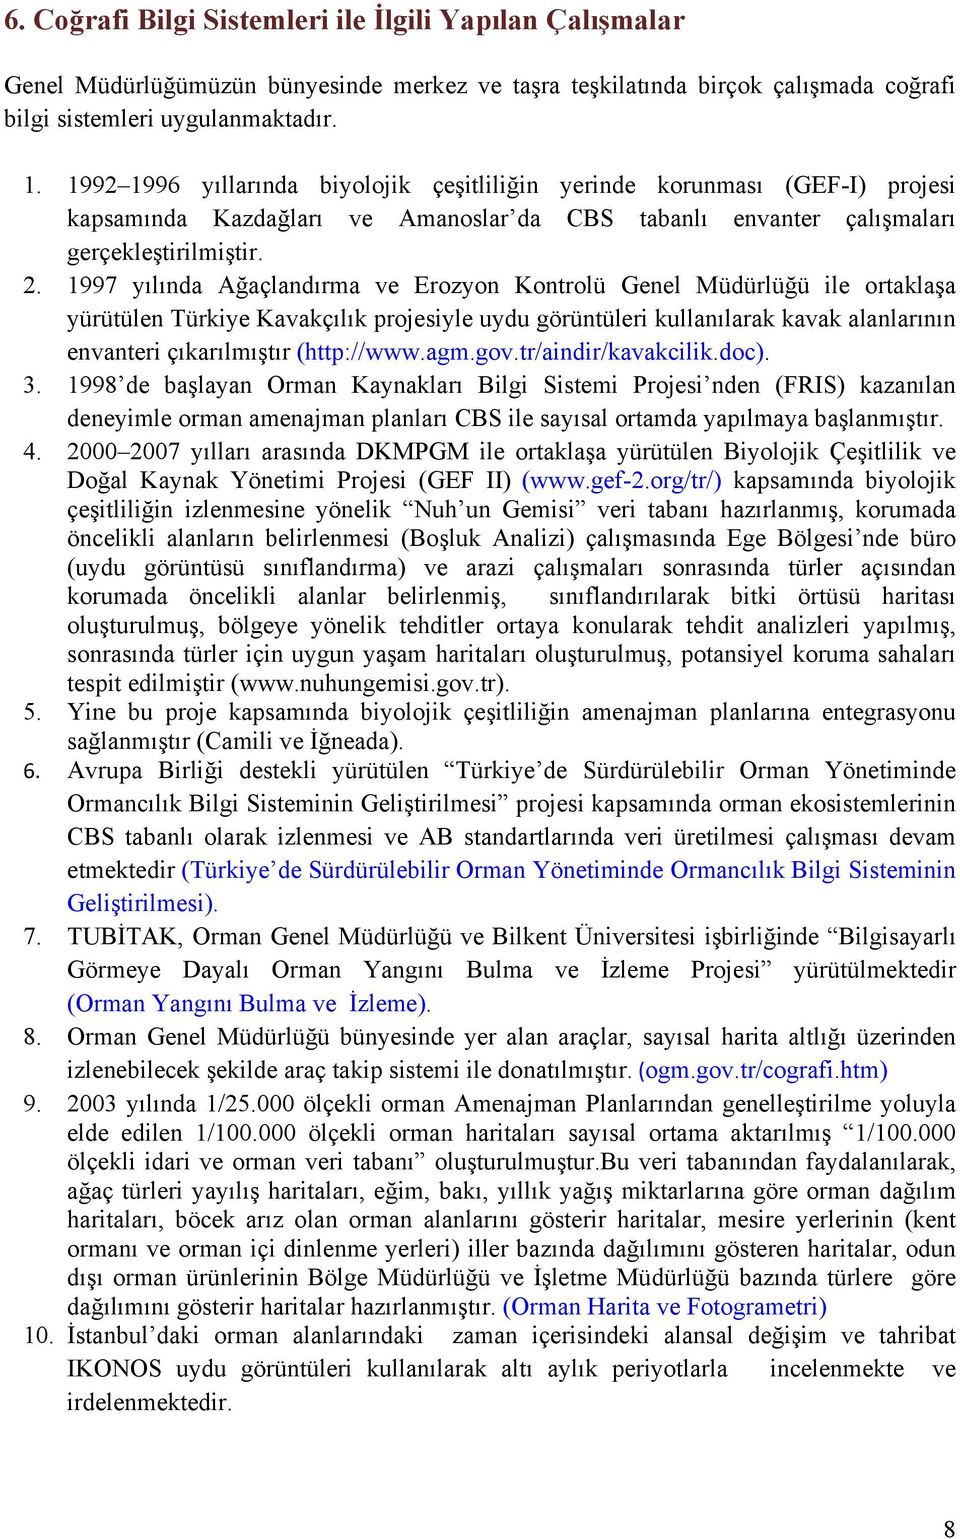 1997 yılında Ağaçlandırma ve Erozyon Kontrolü Genel Müdürlüğü ile ortaklaşa yürütülen Türkiye Kavakçılık projesiyle uydu görüntüleri kullanılarak kavak alanlarının envanteri çıkarılmıştır (http://www.